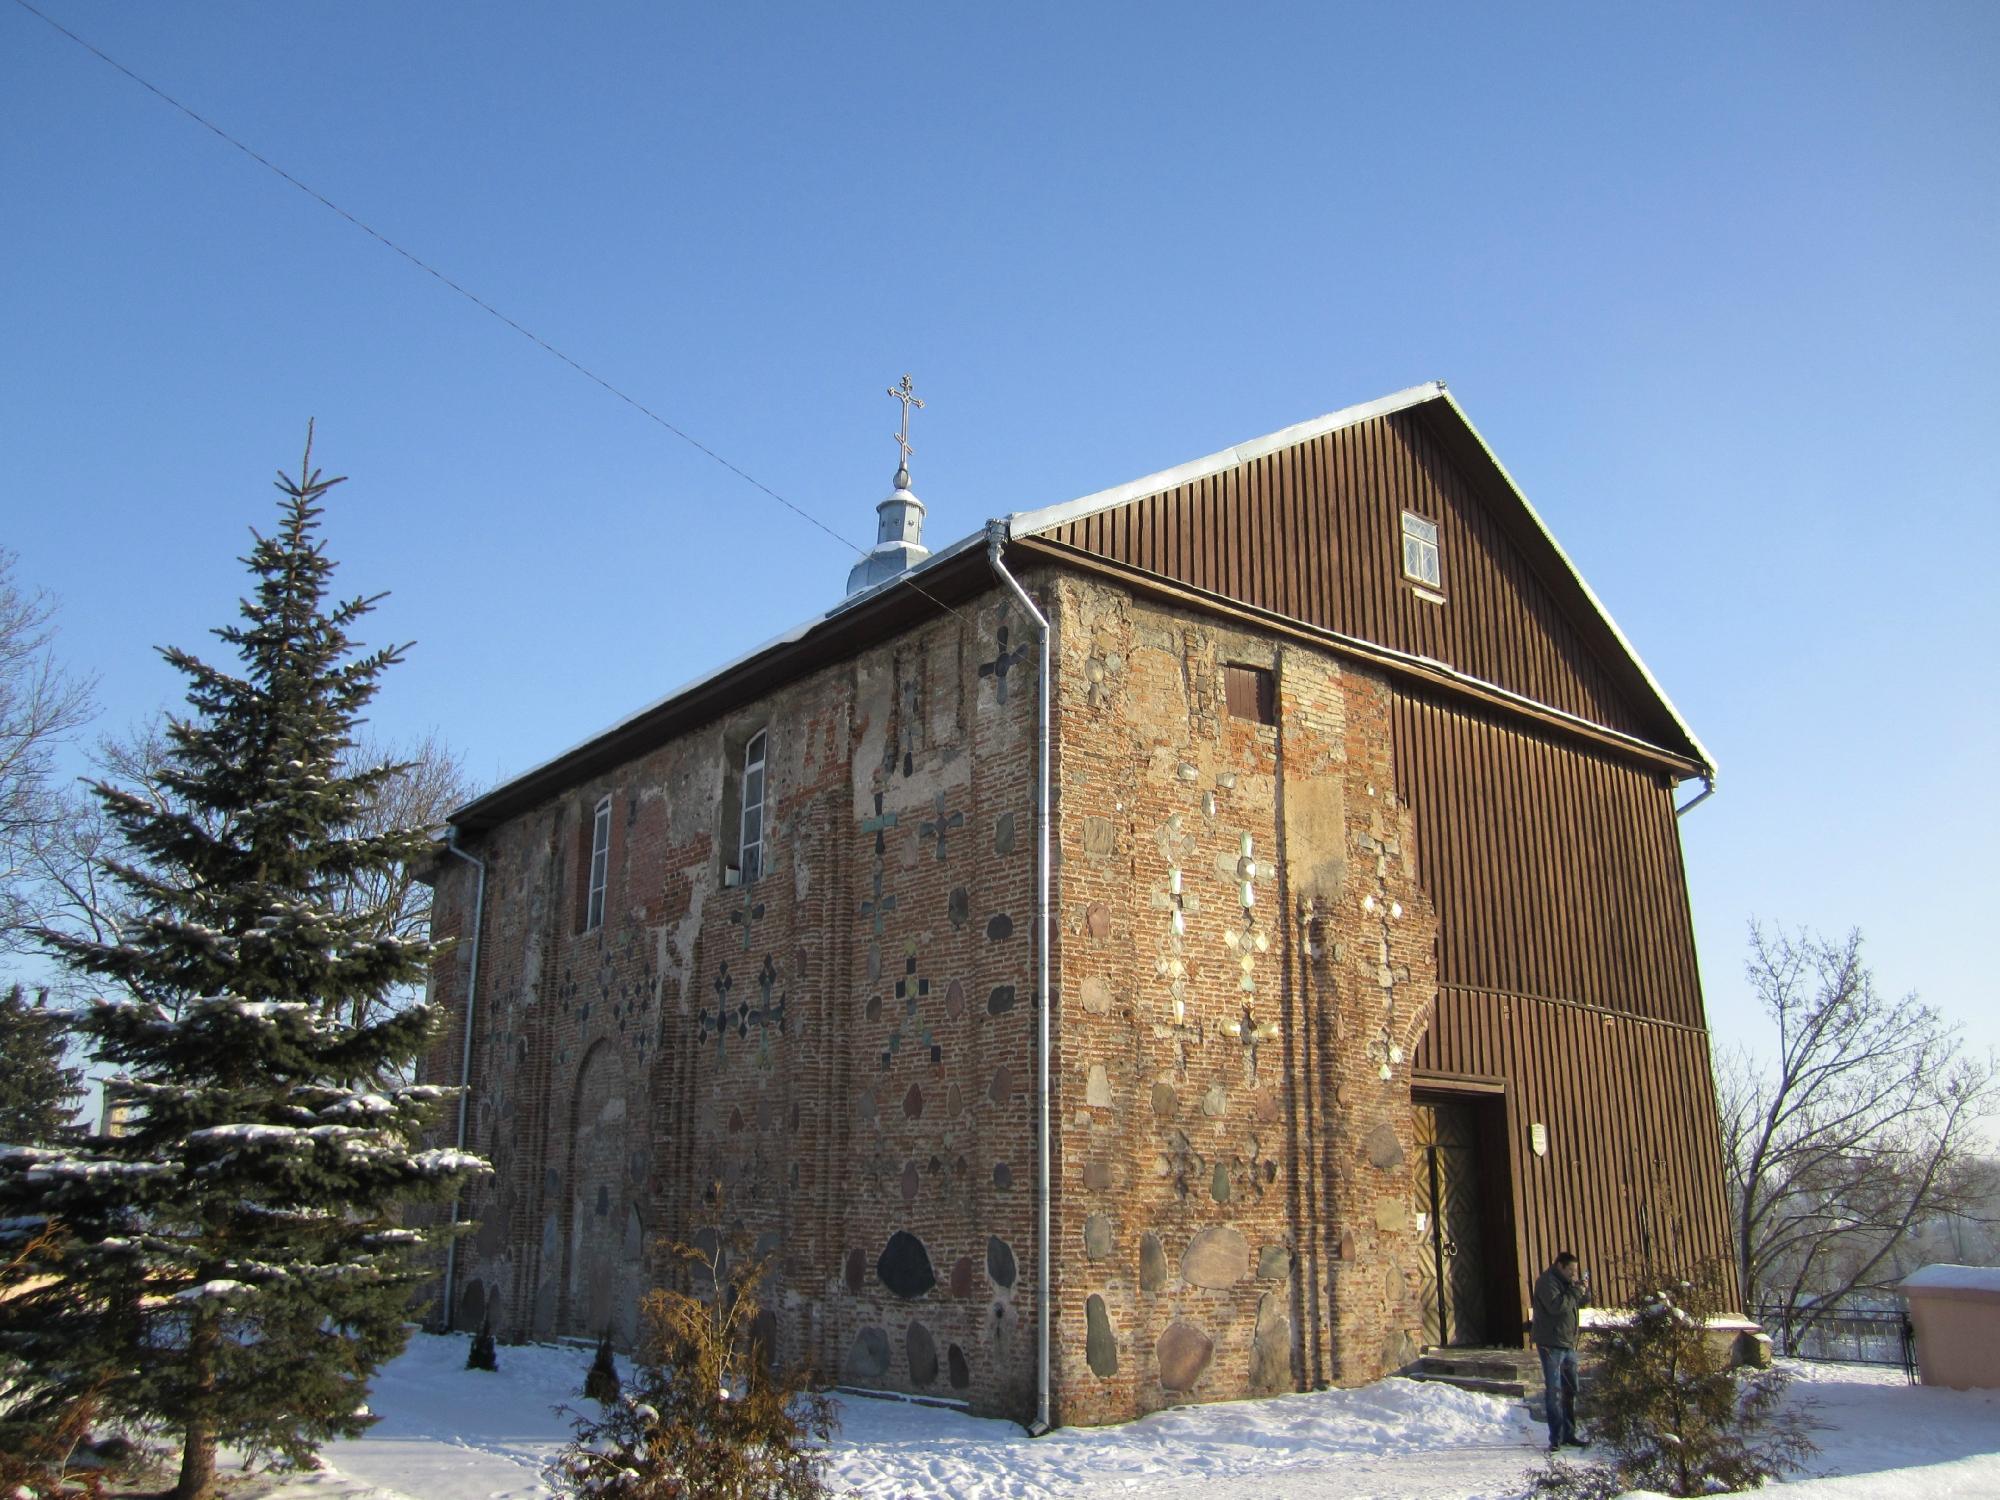 Коложская Борисо-Глебская церковь